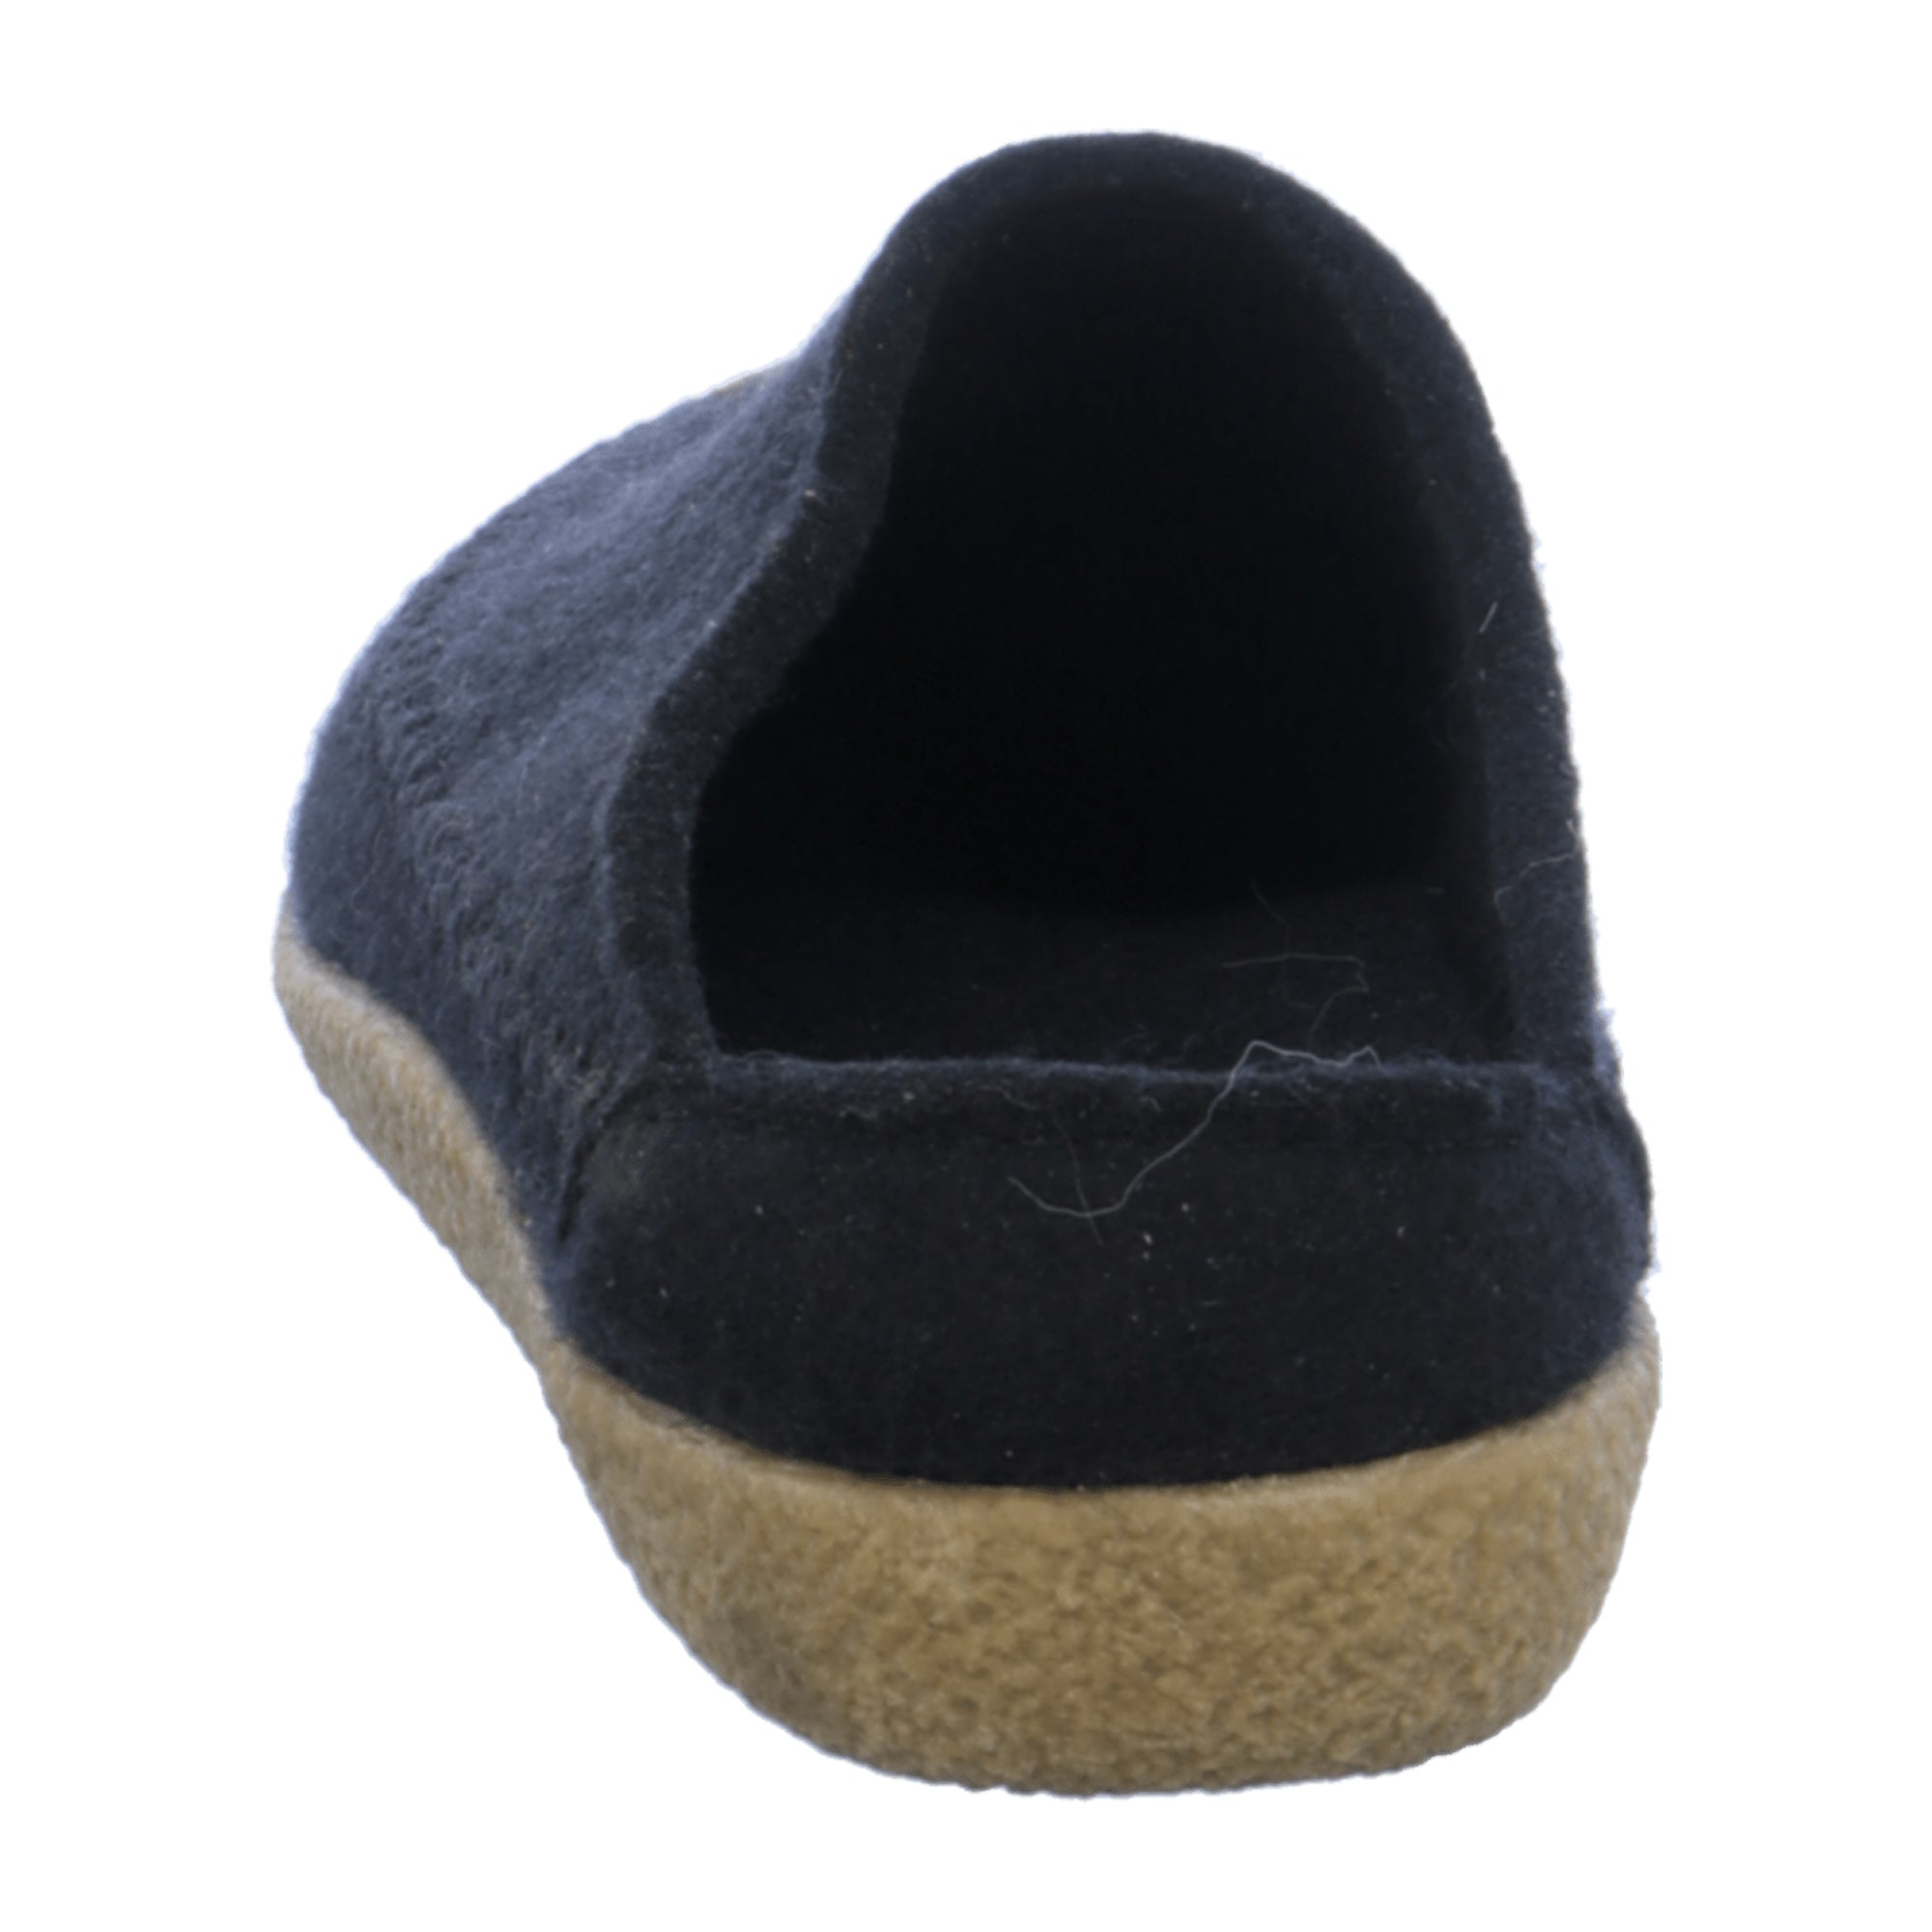 Men's Haflinger Black Wool Slippers - Stylish & Durable